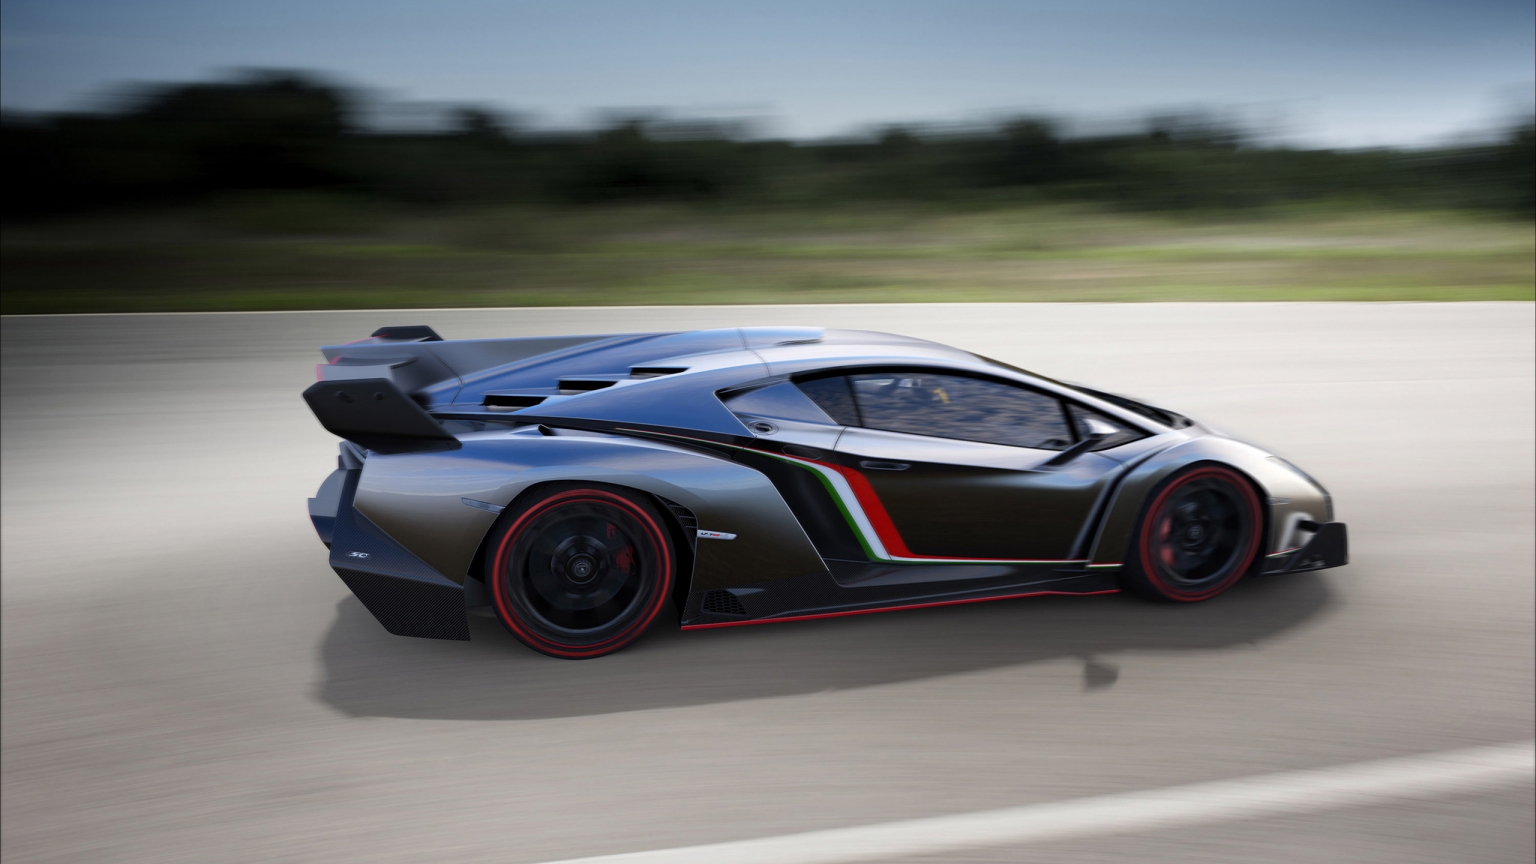 Lamborghini Veneno Speed for 1536 x 864 HDTV resolution